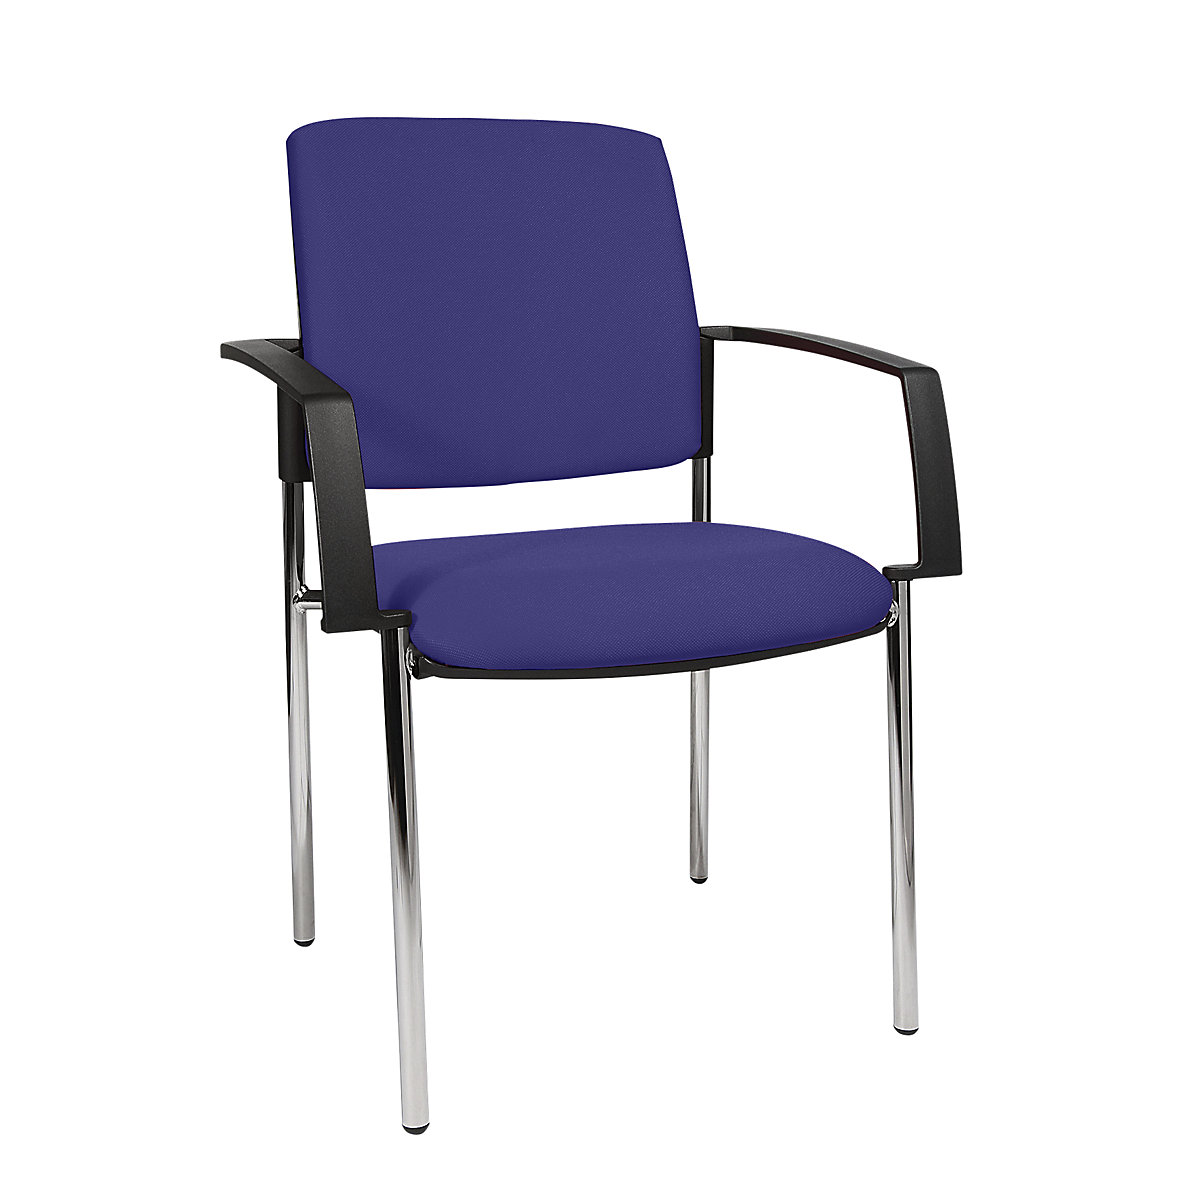 Cadeira almofadada de empilhar – Topstar, armação de quatro pés, embalagem de 2 unid., armação cromada, forro azul-5